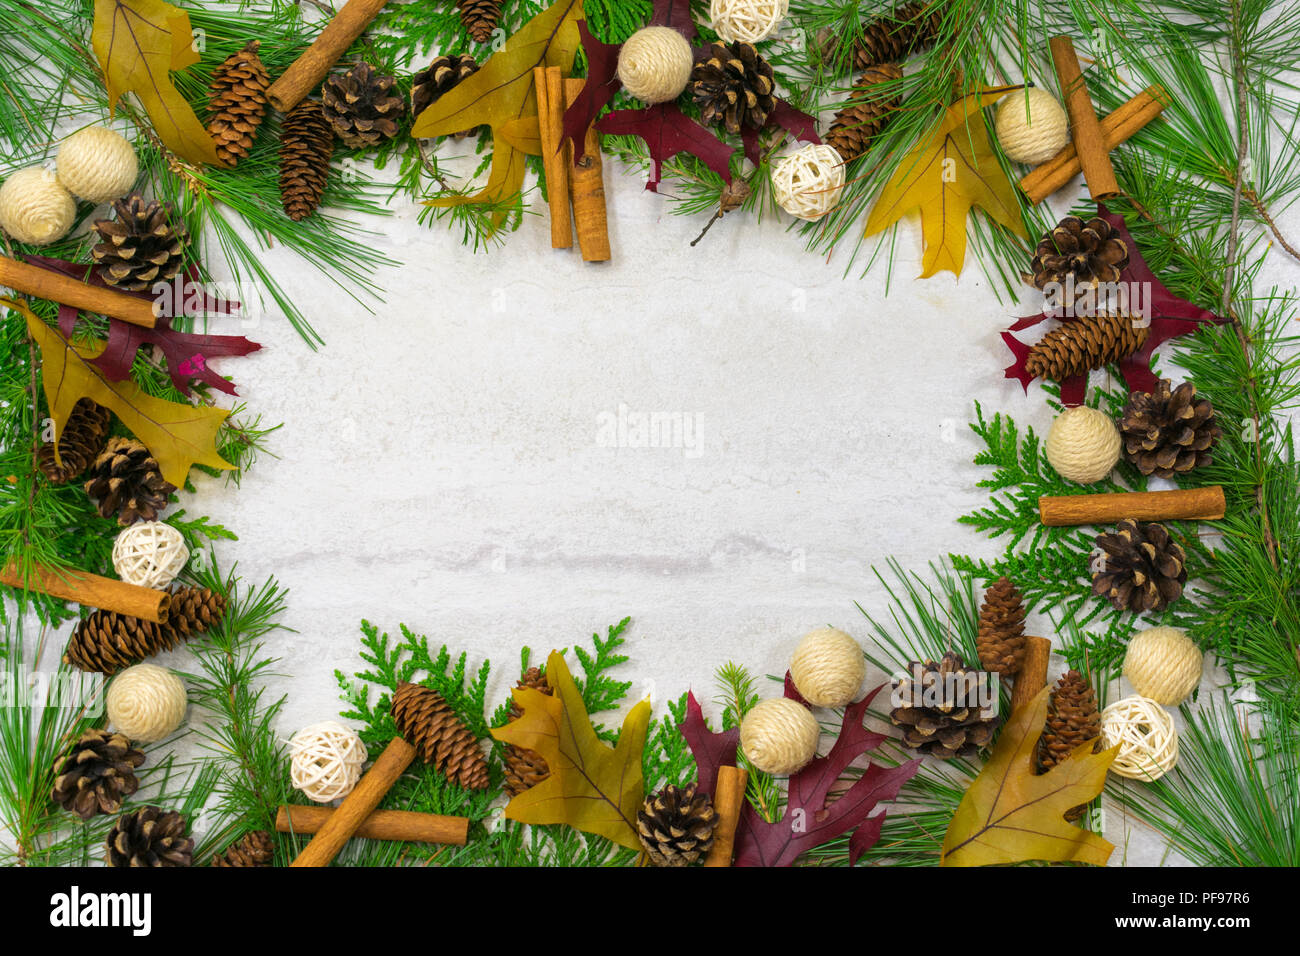 Une bordure de cèdre, de pin blanc et de mélèze laricin, avec des branches d'épinette, pin sylvestre. et la pruche des cônes de pin, des bâtons de cannelle, et de la ficelle et twig ball Banque D'Images